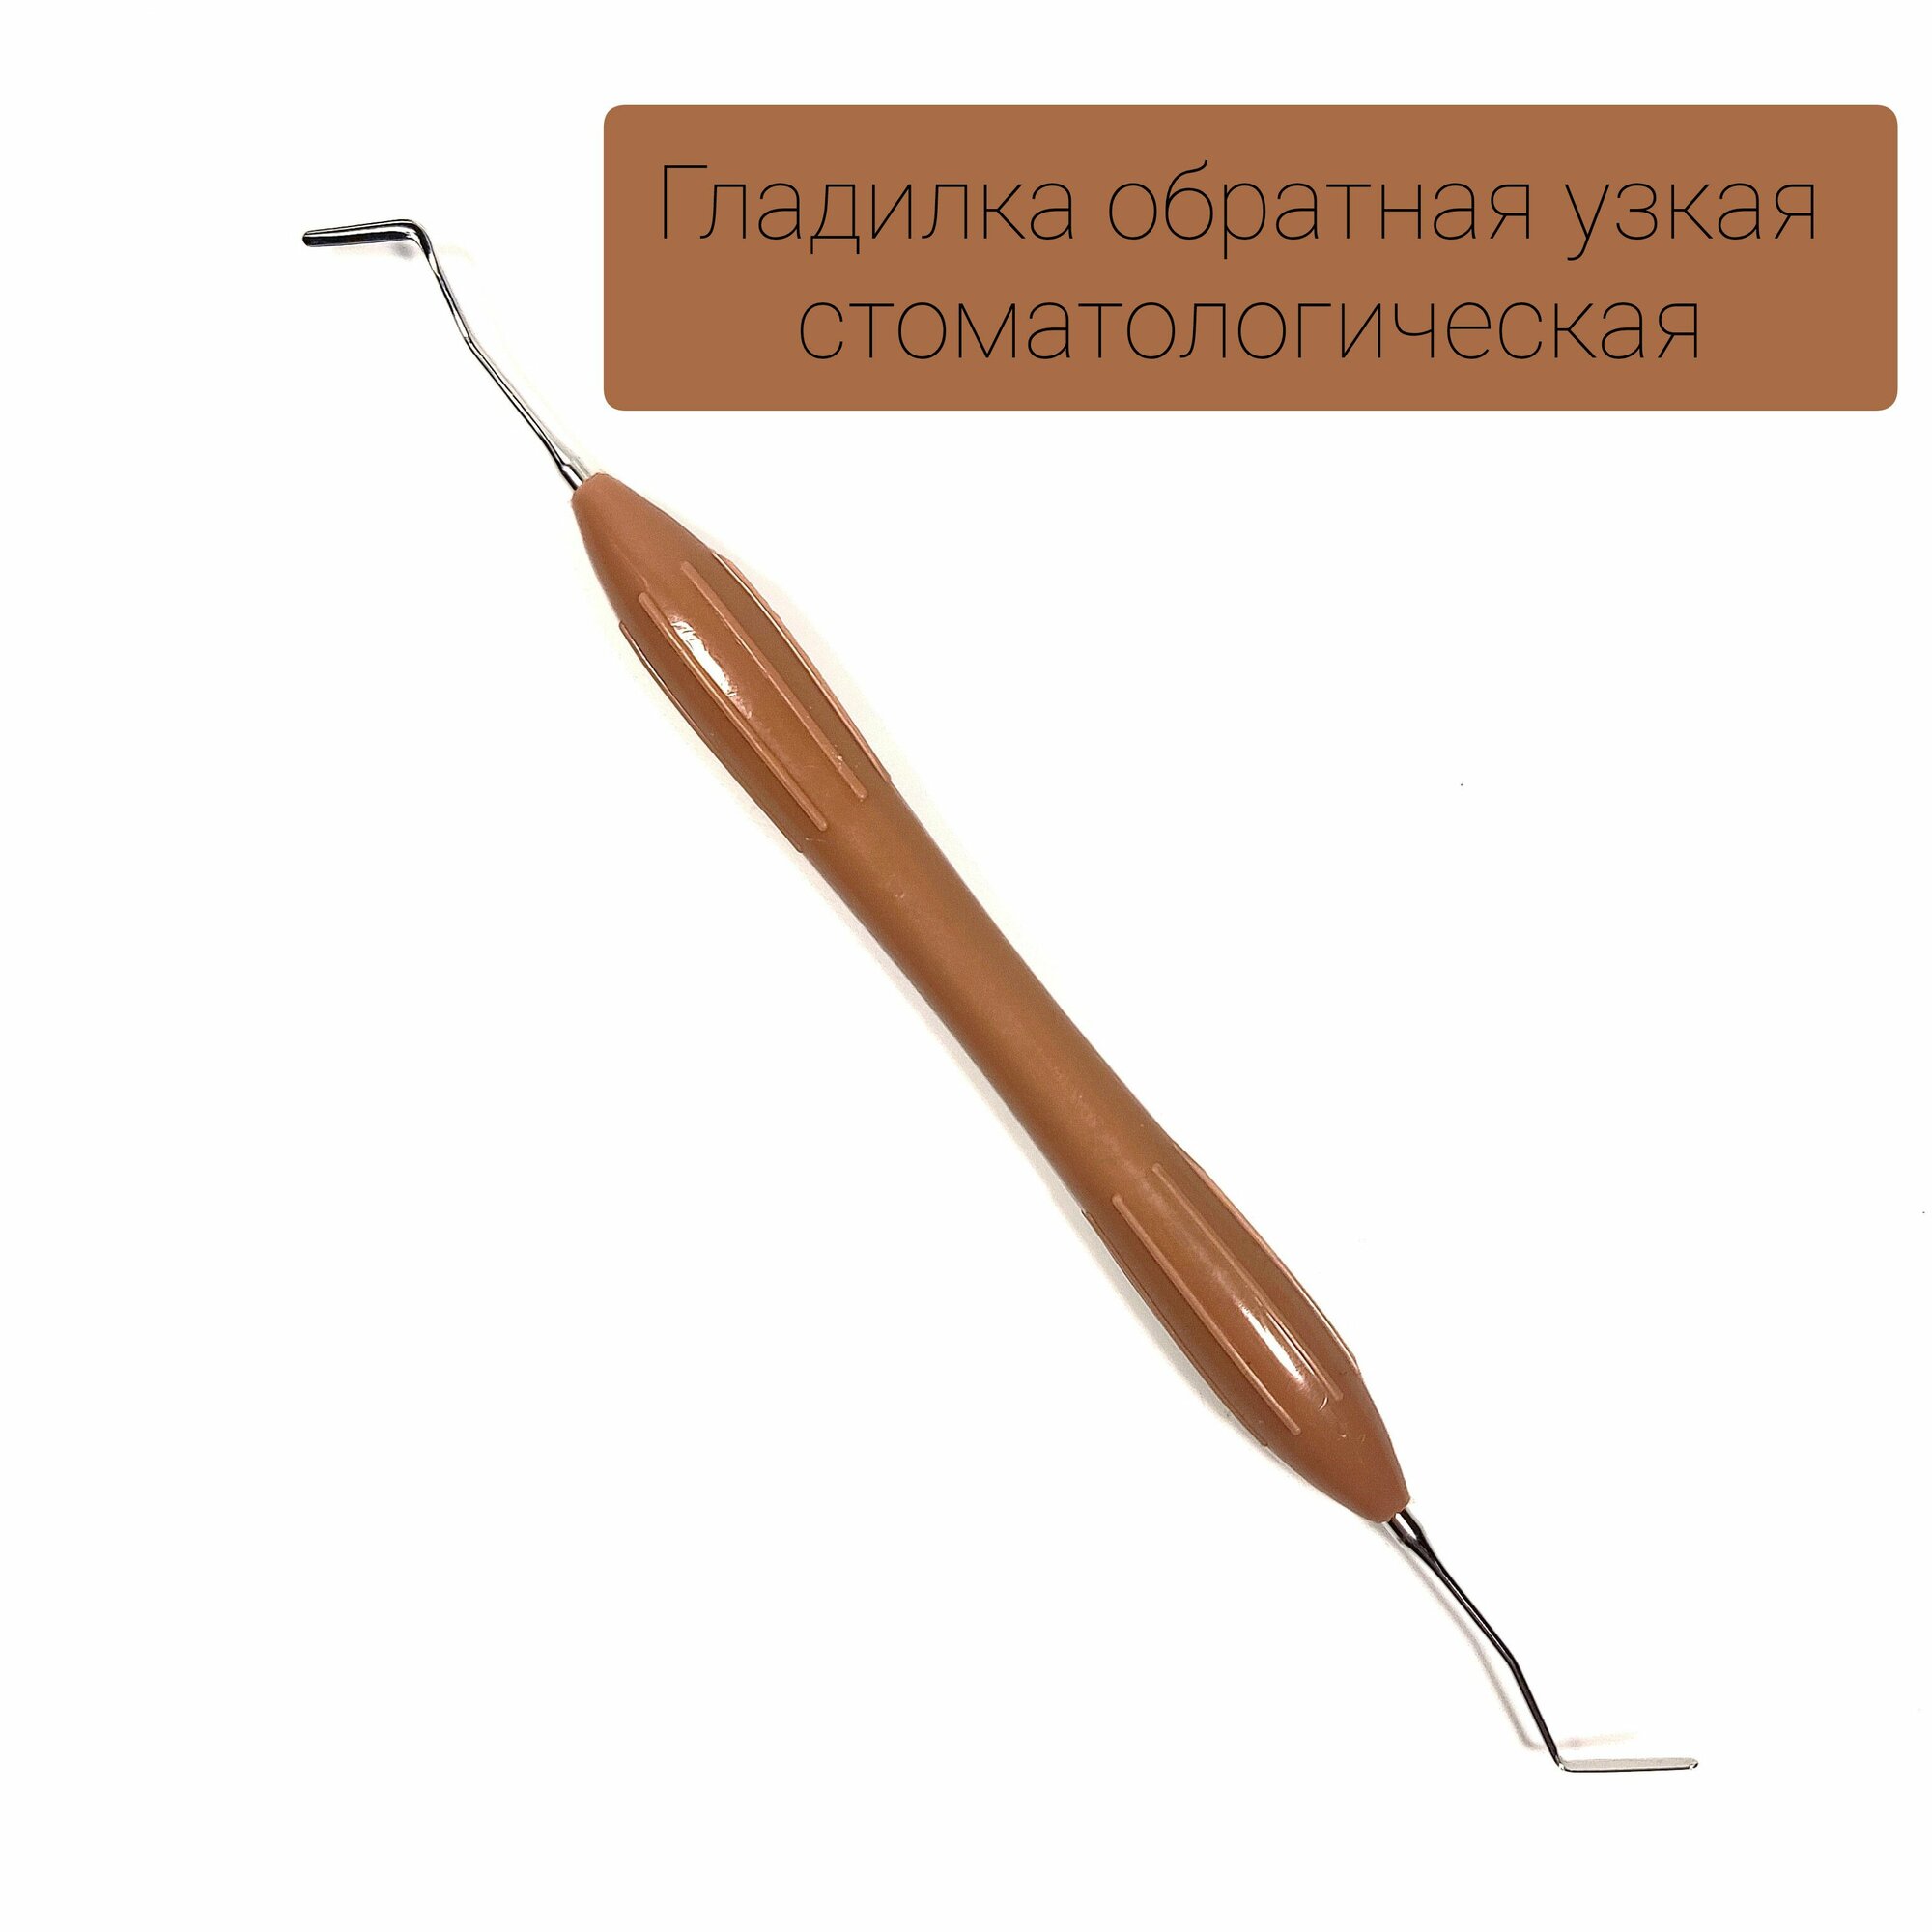 Гладилка стоматологическая узкая обратная коричневая двусторонняя